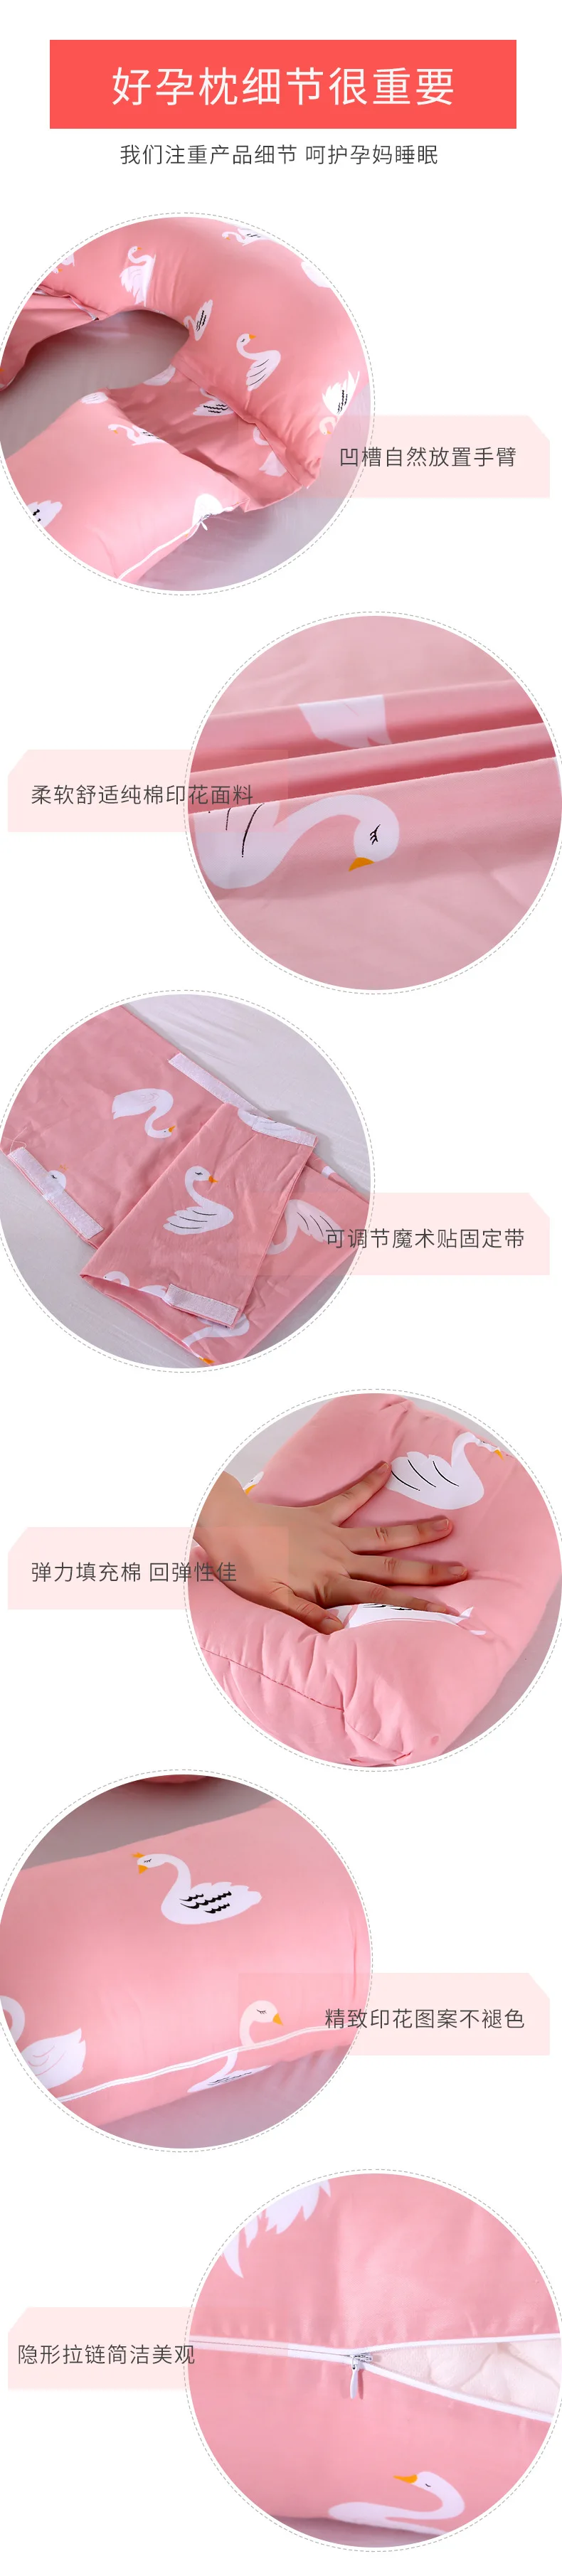 Напрямую от производителя Tmall OEM многофункциональная g-образная Подушка для беременных и кормящих поясная подушка для сна для беременных женщин Pi